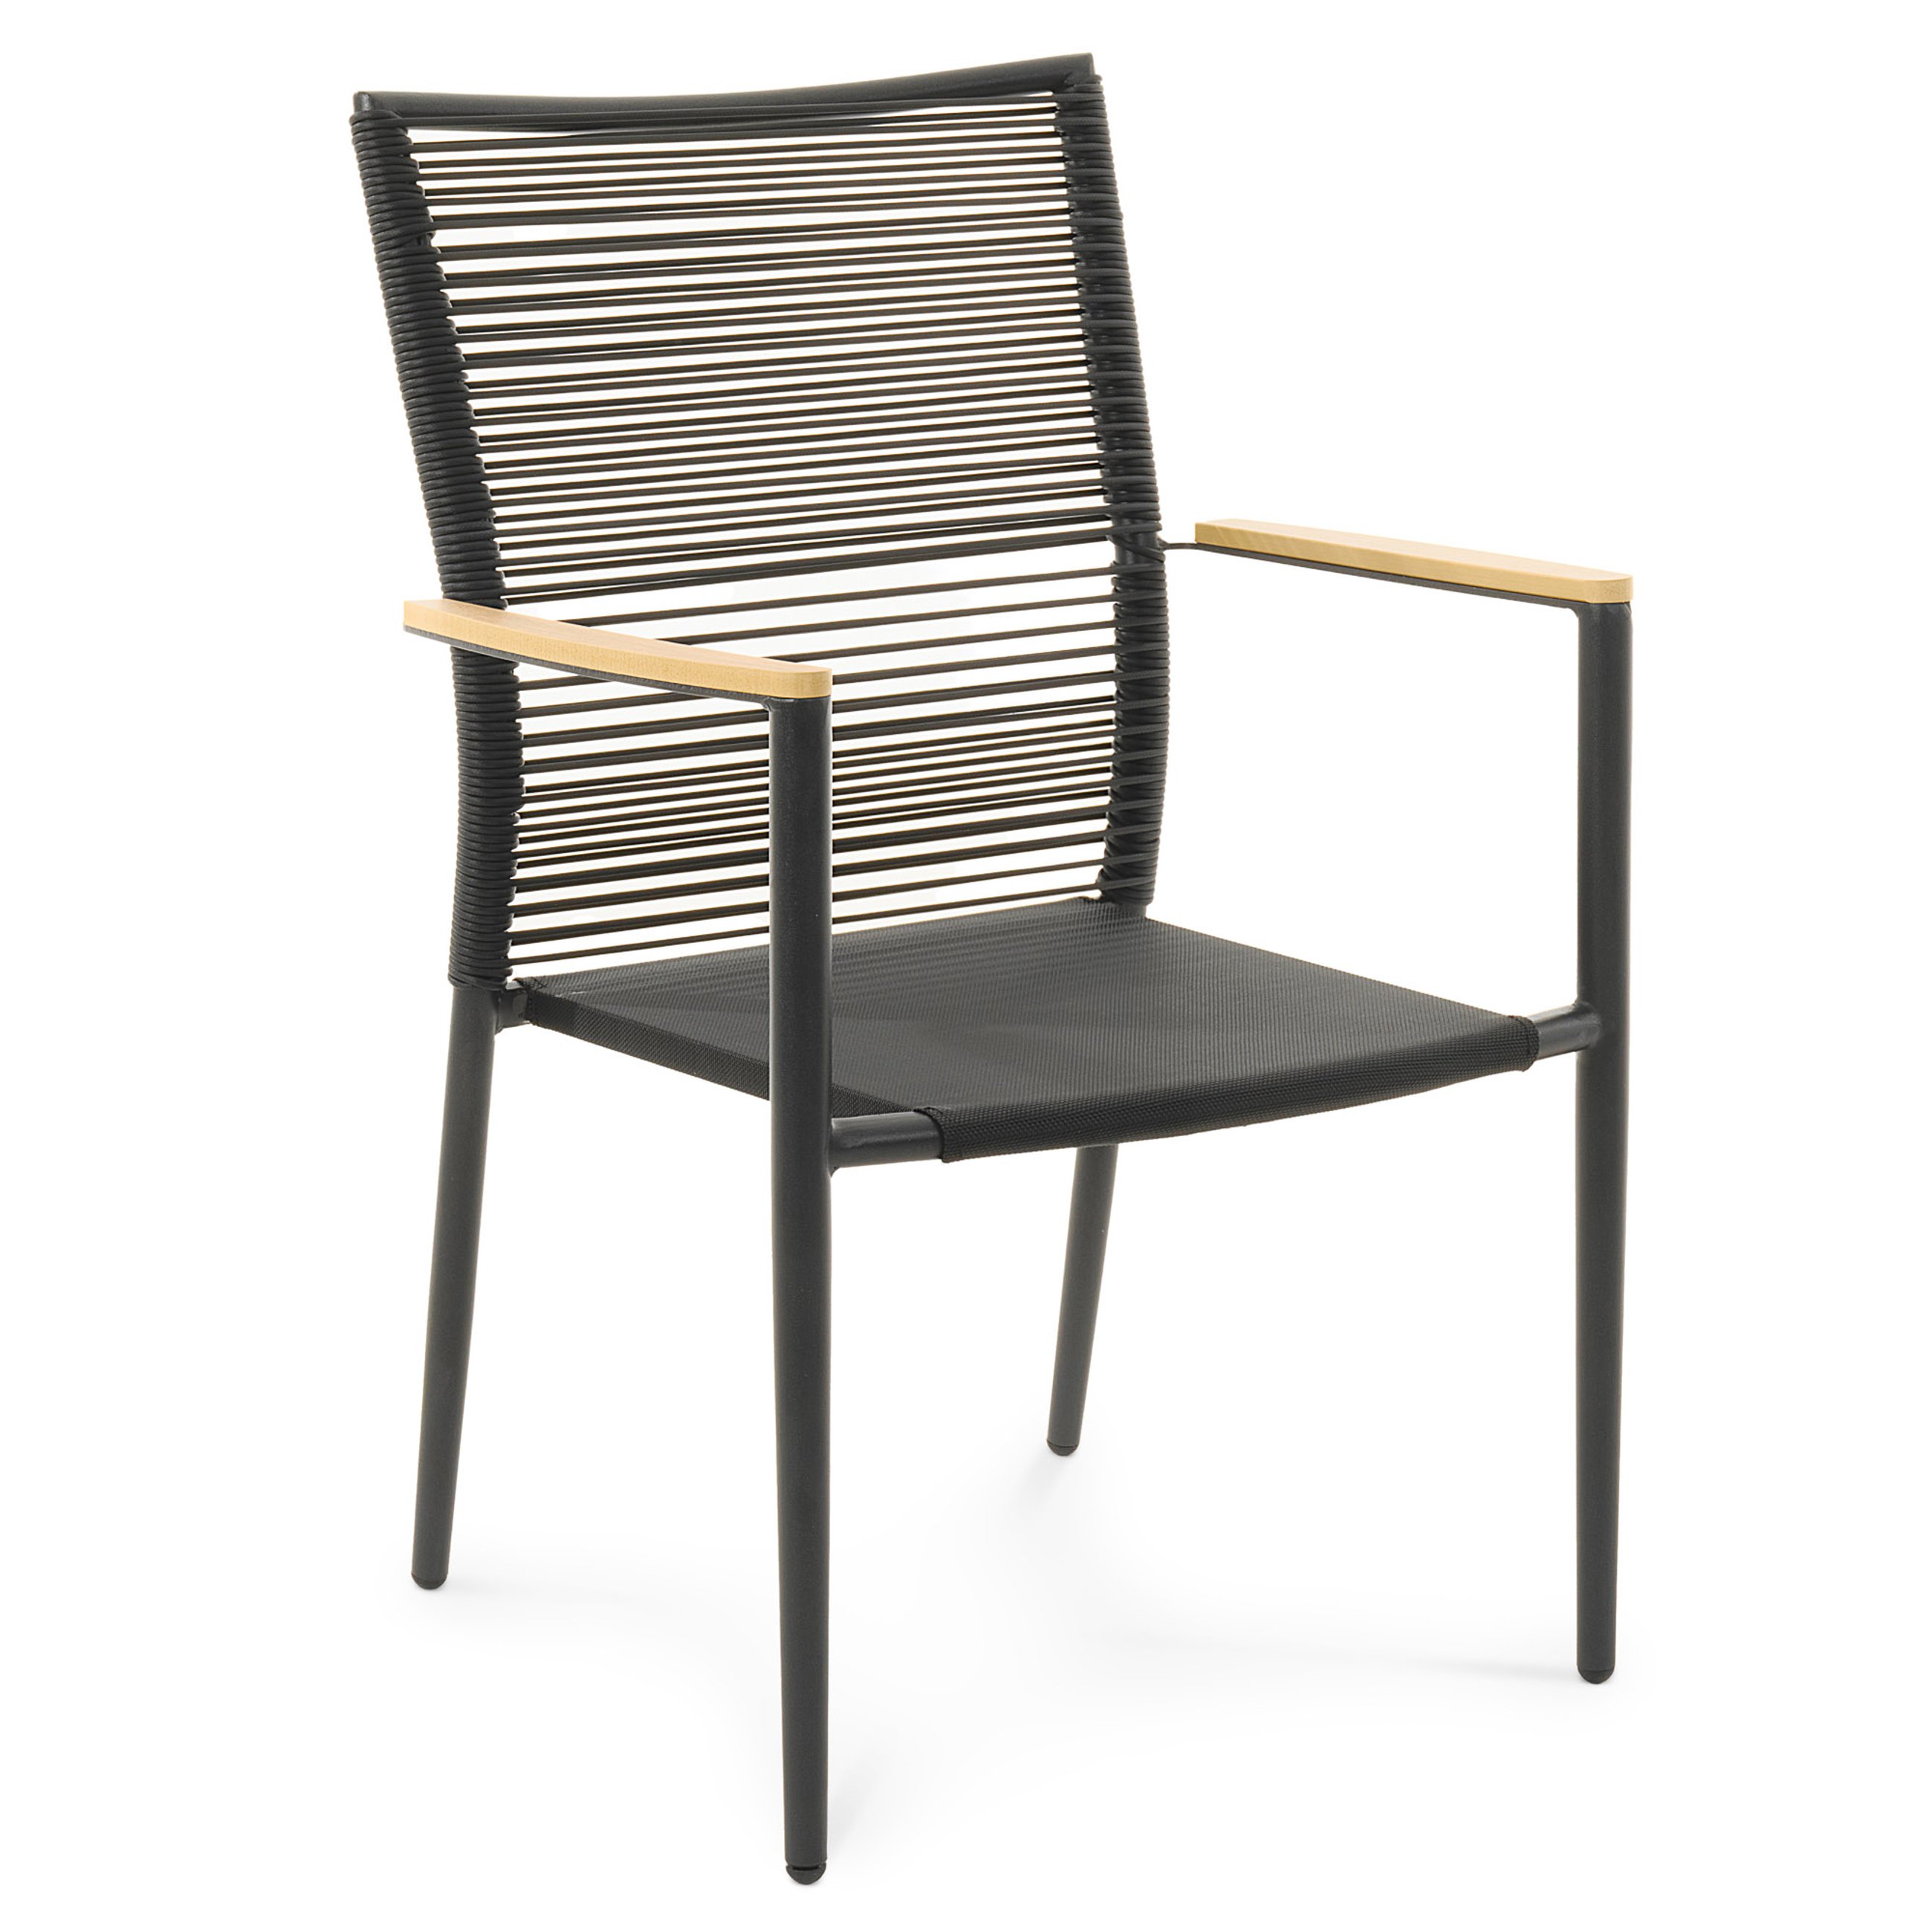 Krzesło ogrodowe Asti beżowe marki di volio zostało zaprojektowane z myślą o wygodzie użytkowania